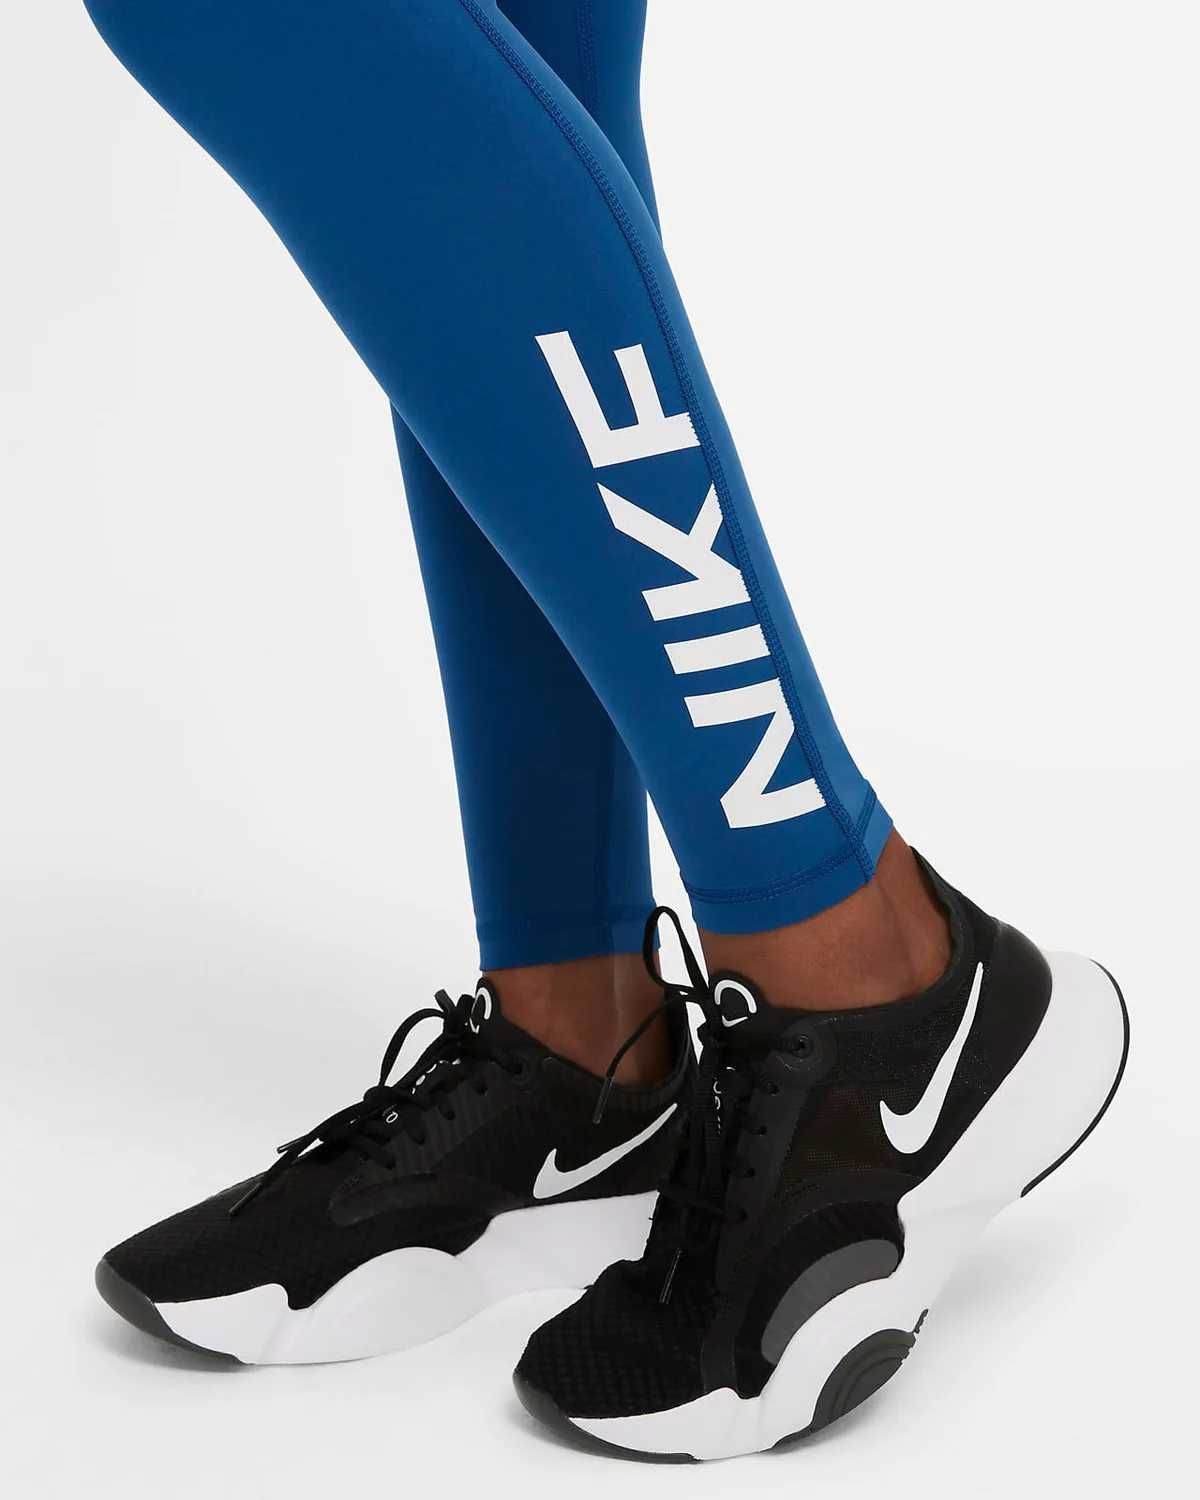 Colanți Nike Pro, DRI-FIT S, albastru